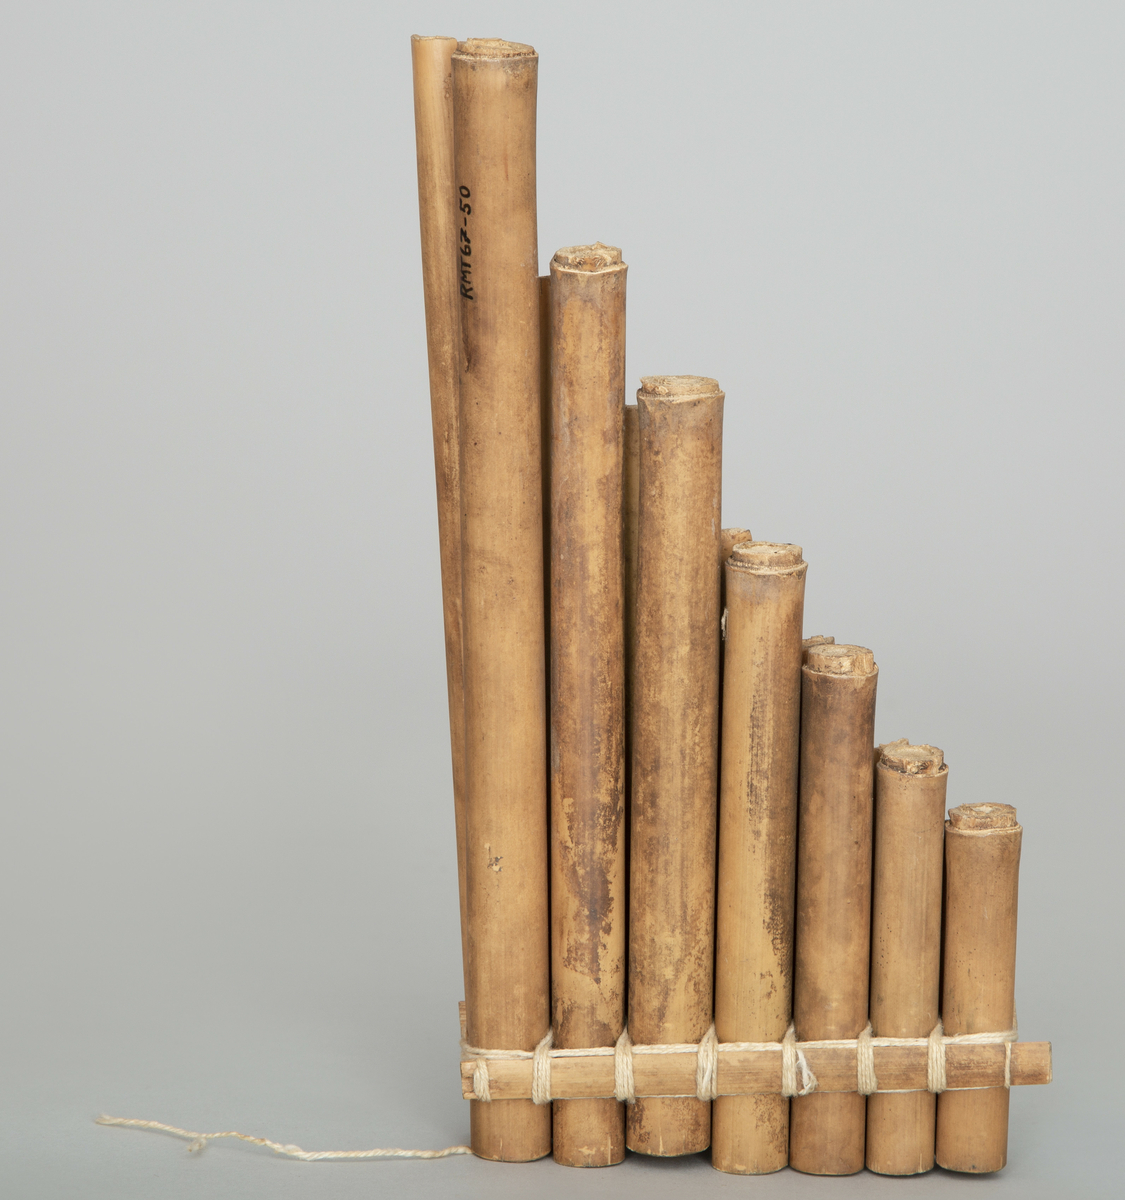 Fløyte som består av to rekker parallelle bambusrør av avtagende lengde. Syv rør i hver rekke. Bundet fast til hverandre i flåteform. Den ene raden åpen, den andre lukket.